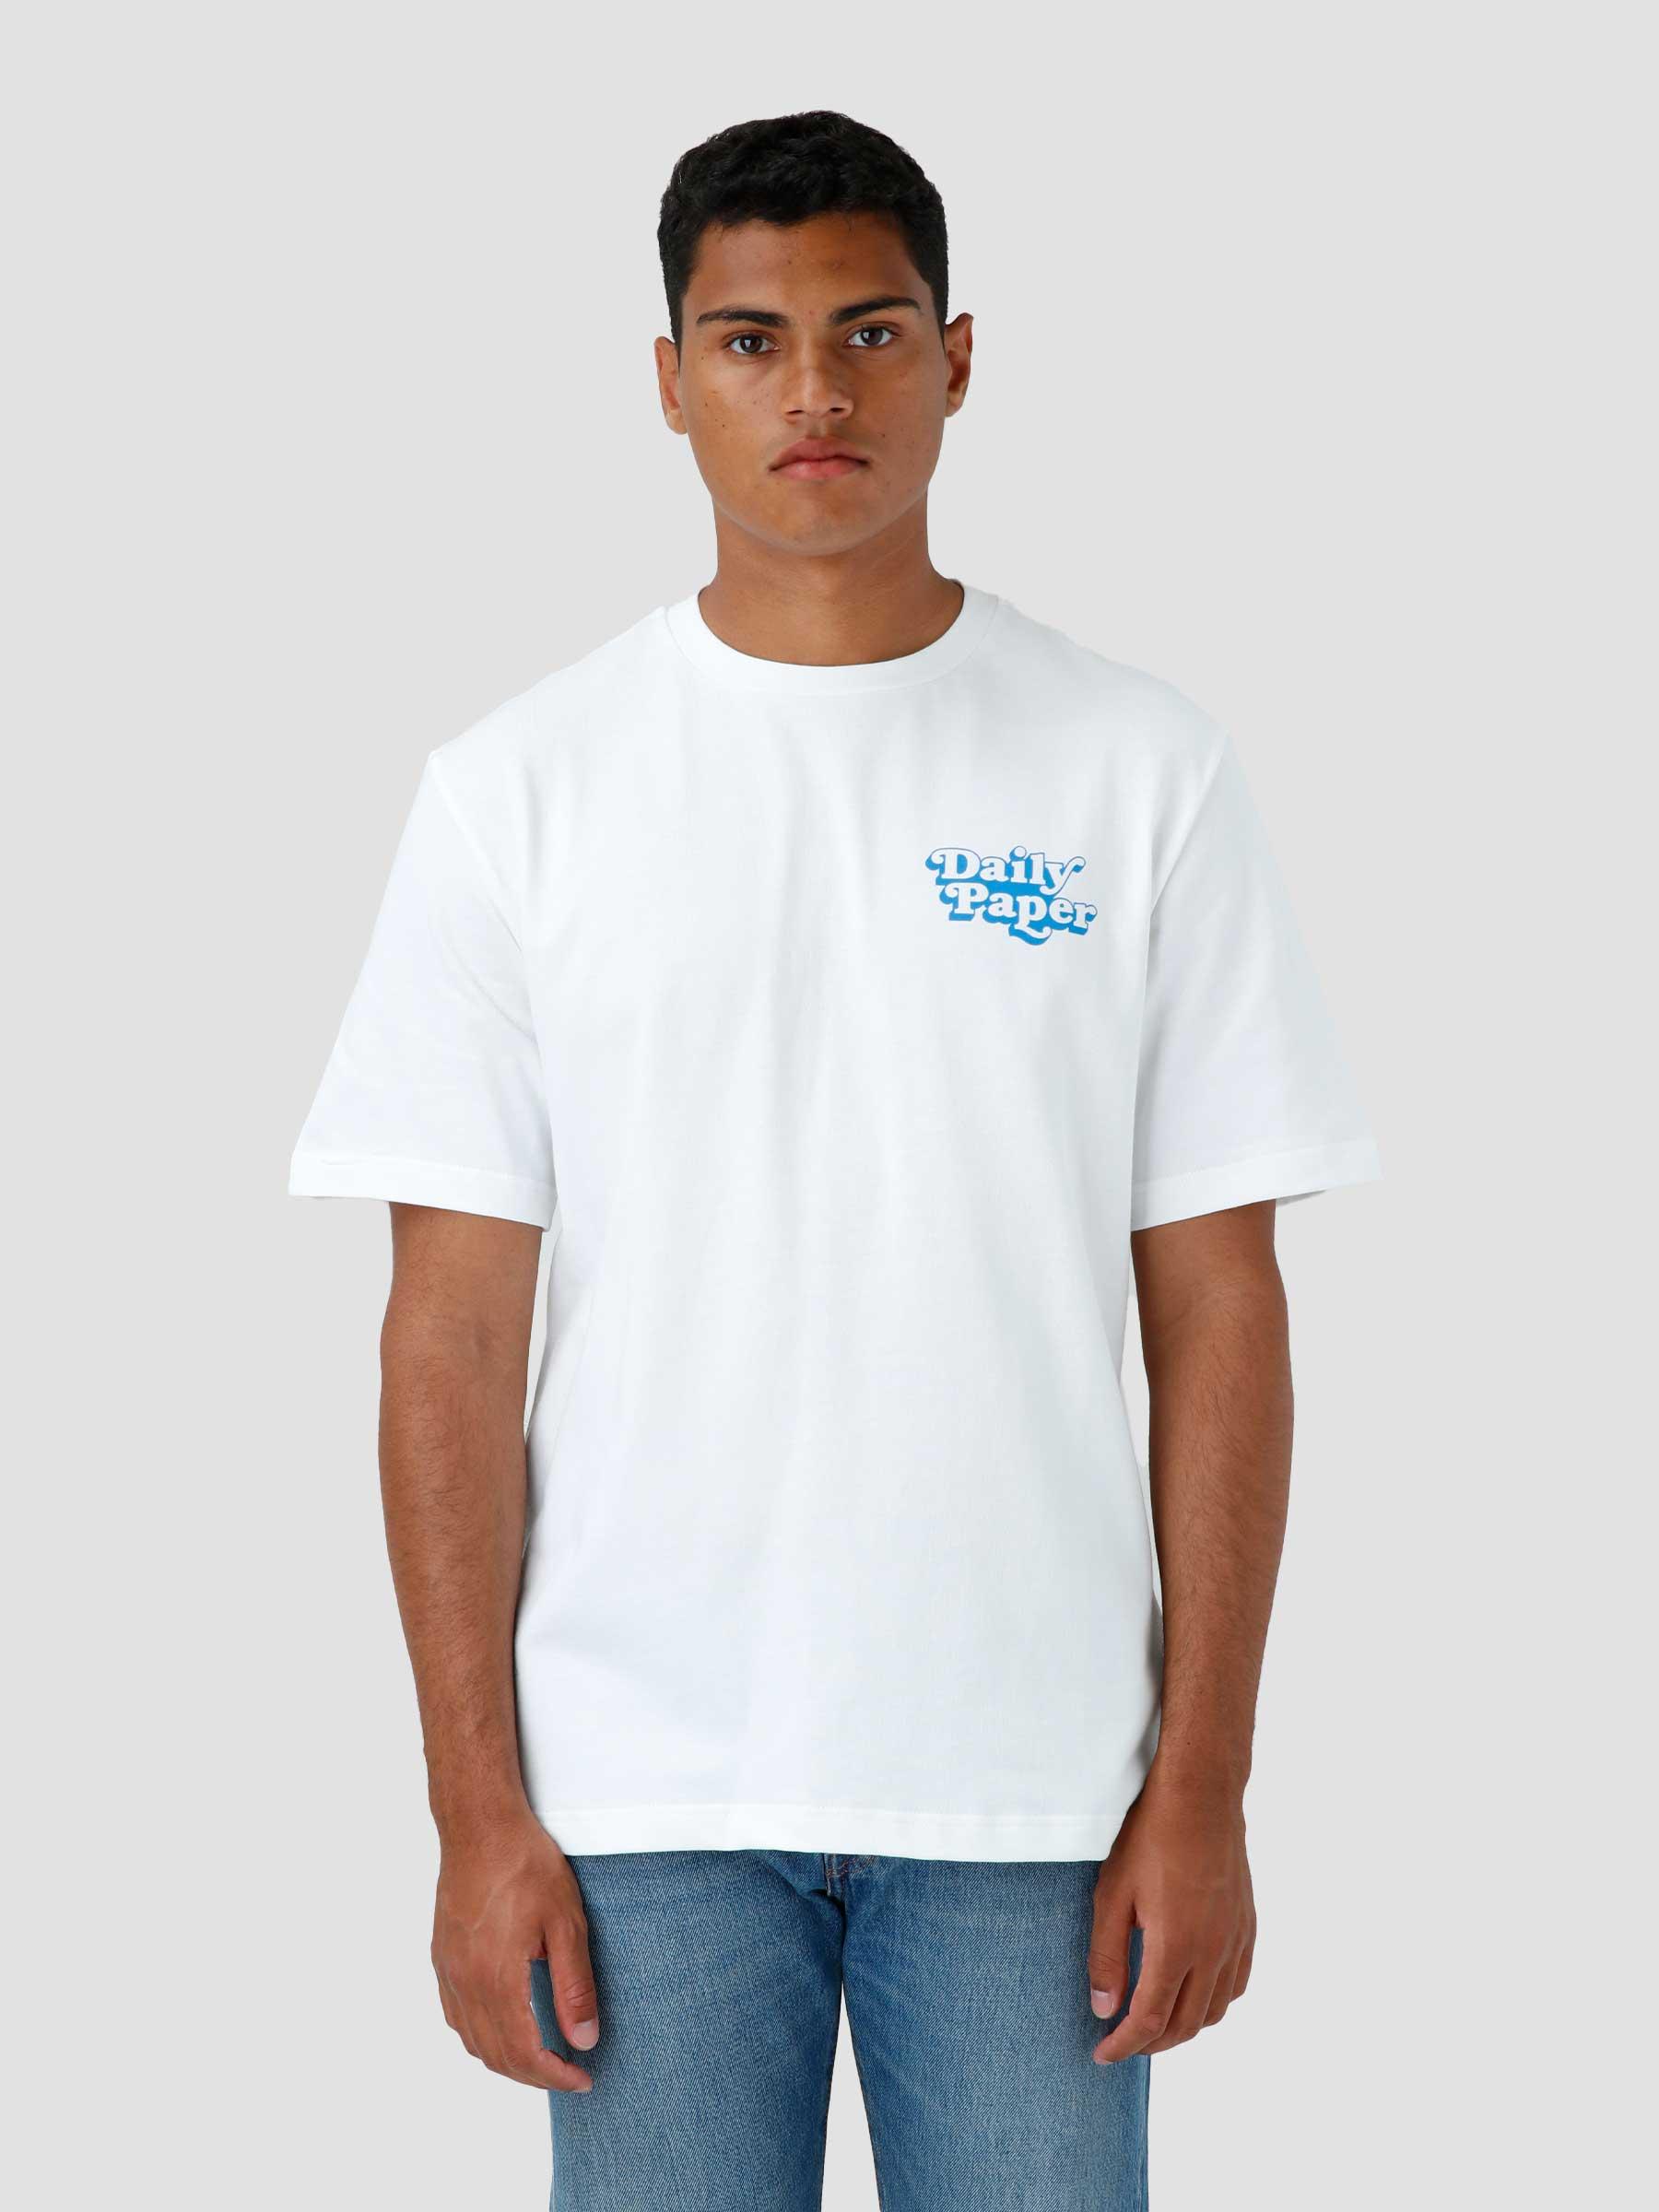 Najeeb T-shirt White 2221072